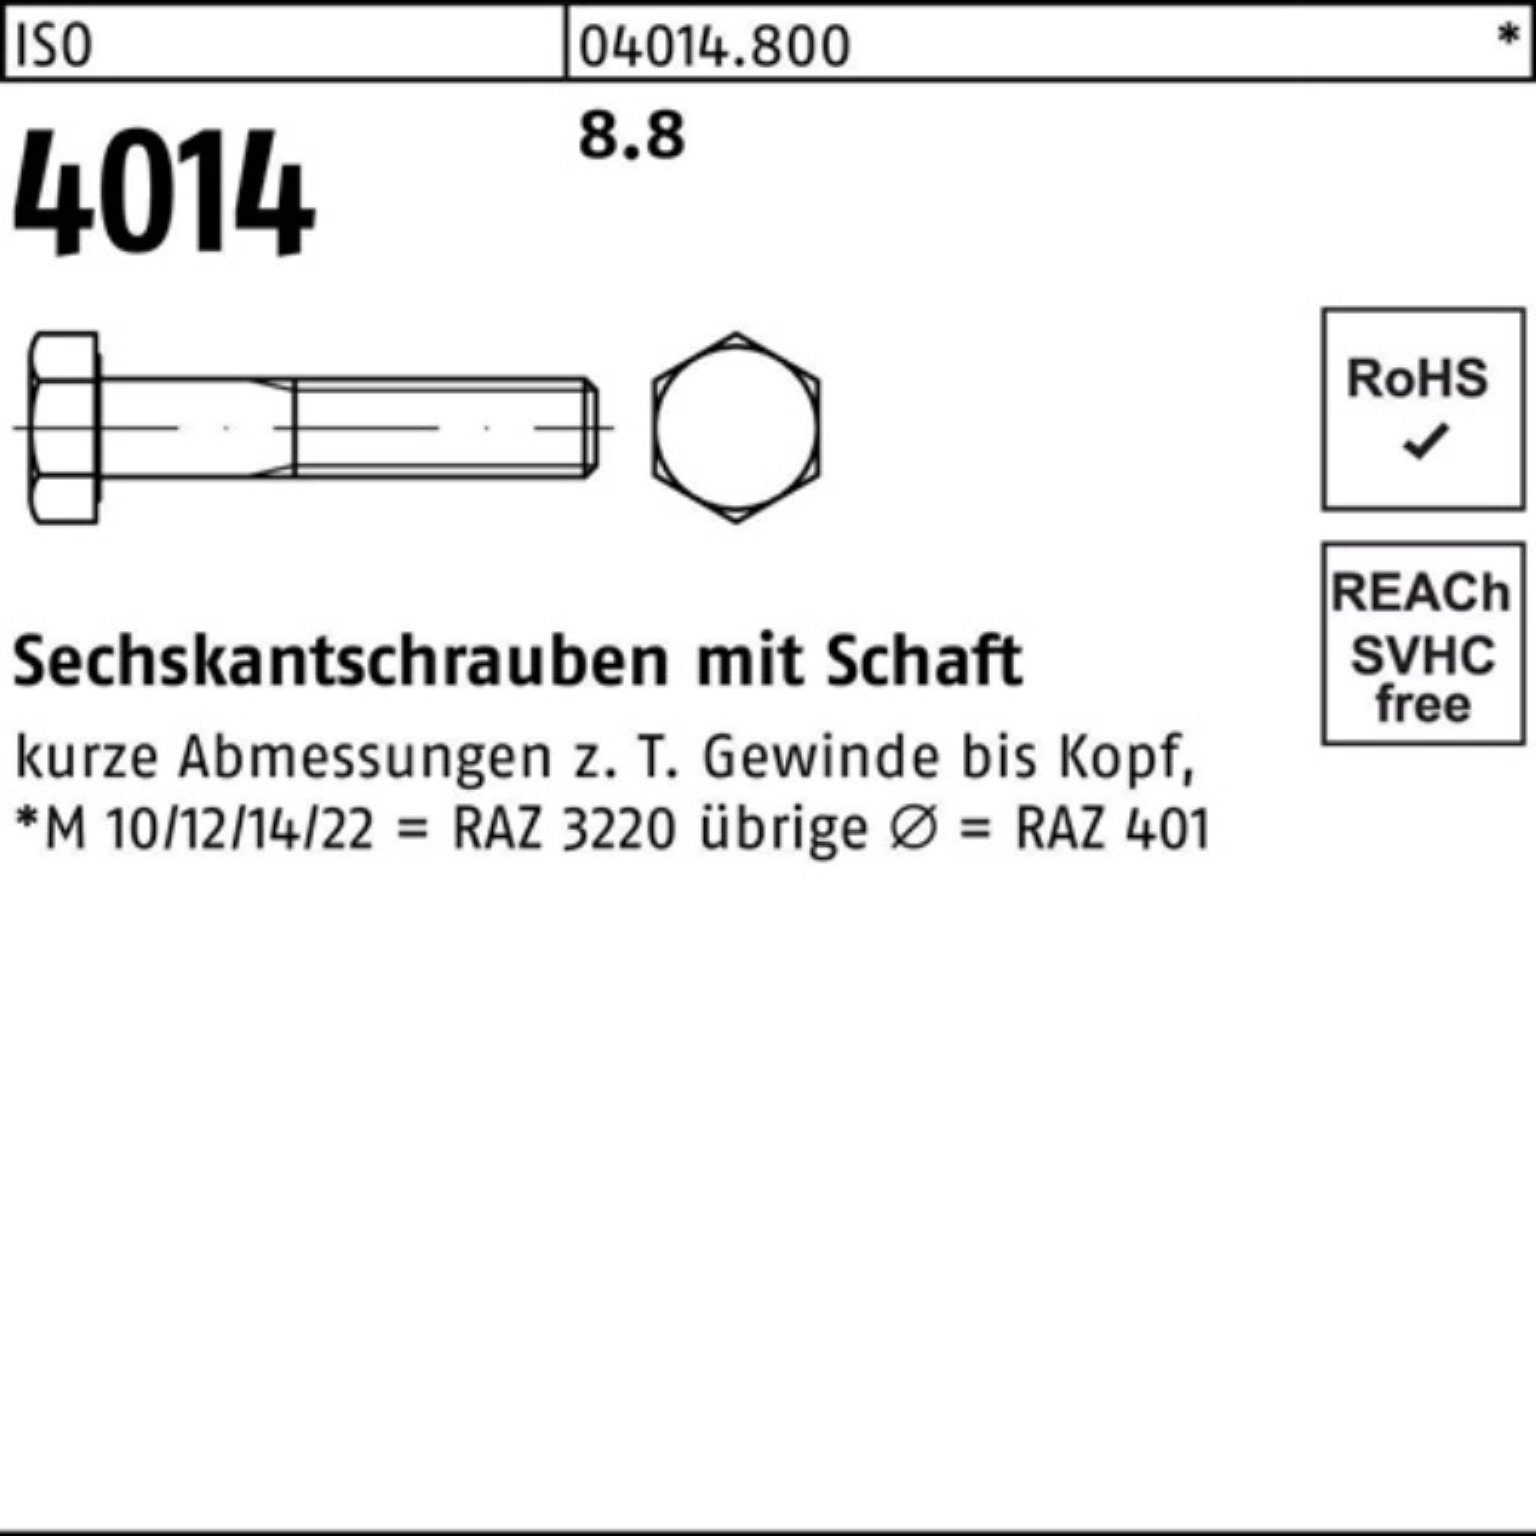 Bufab Sechskantschraube 100er Pack 1 Schaft 540 Stück 4014 ISO Sechskantschraube M36x ISO 8.8